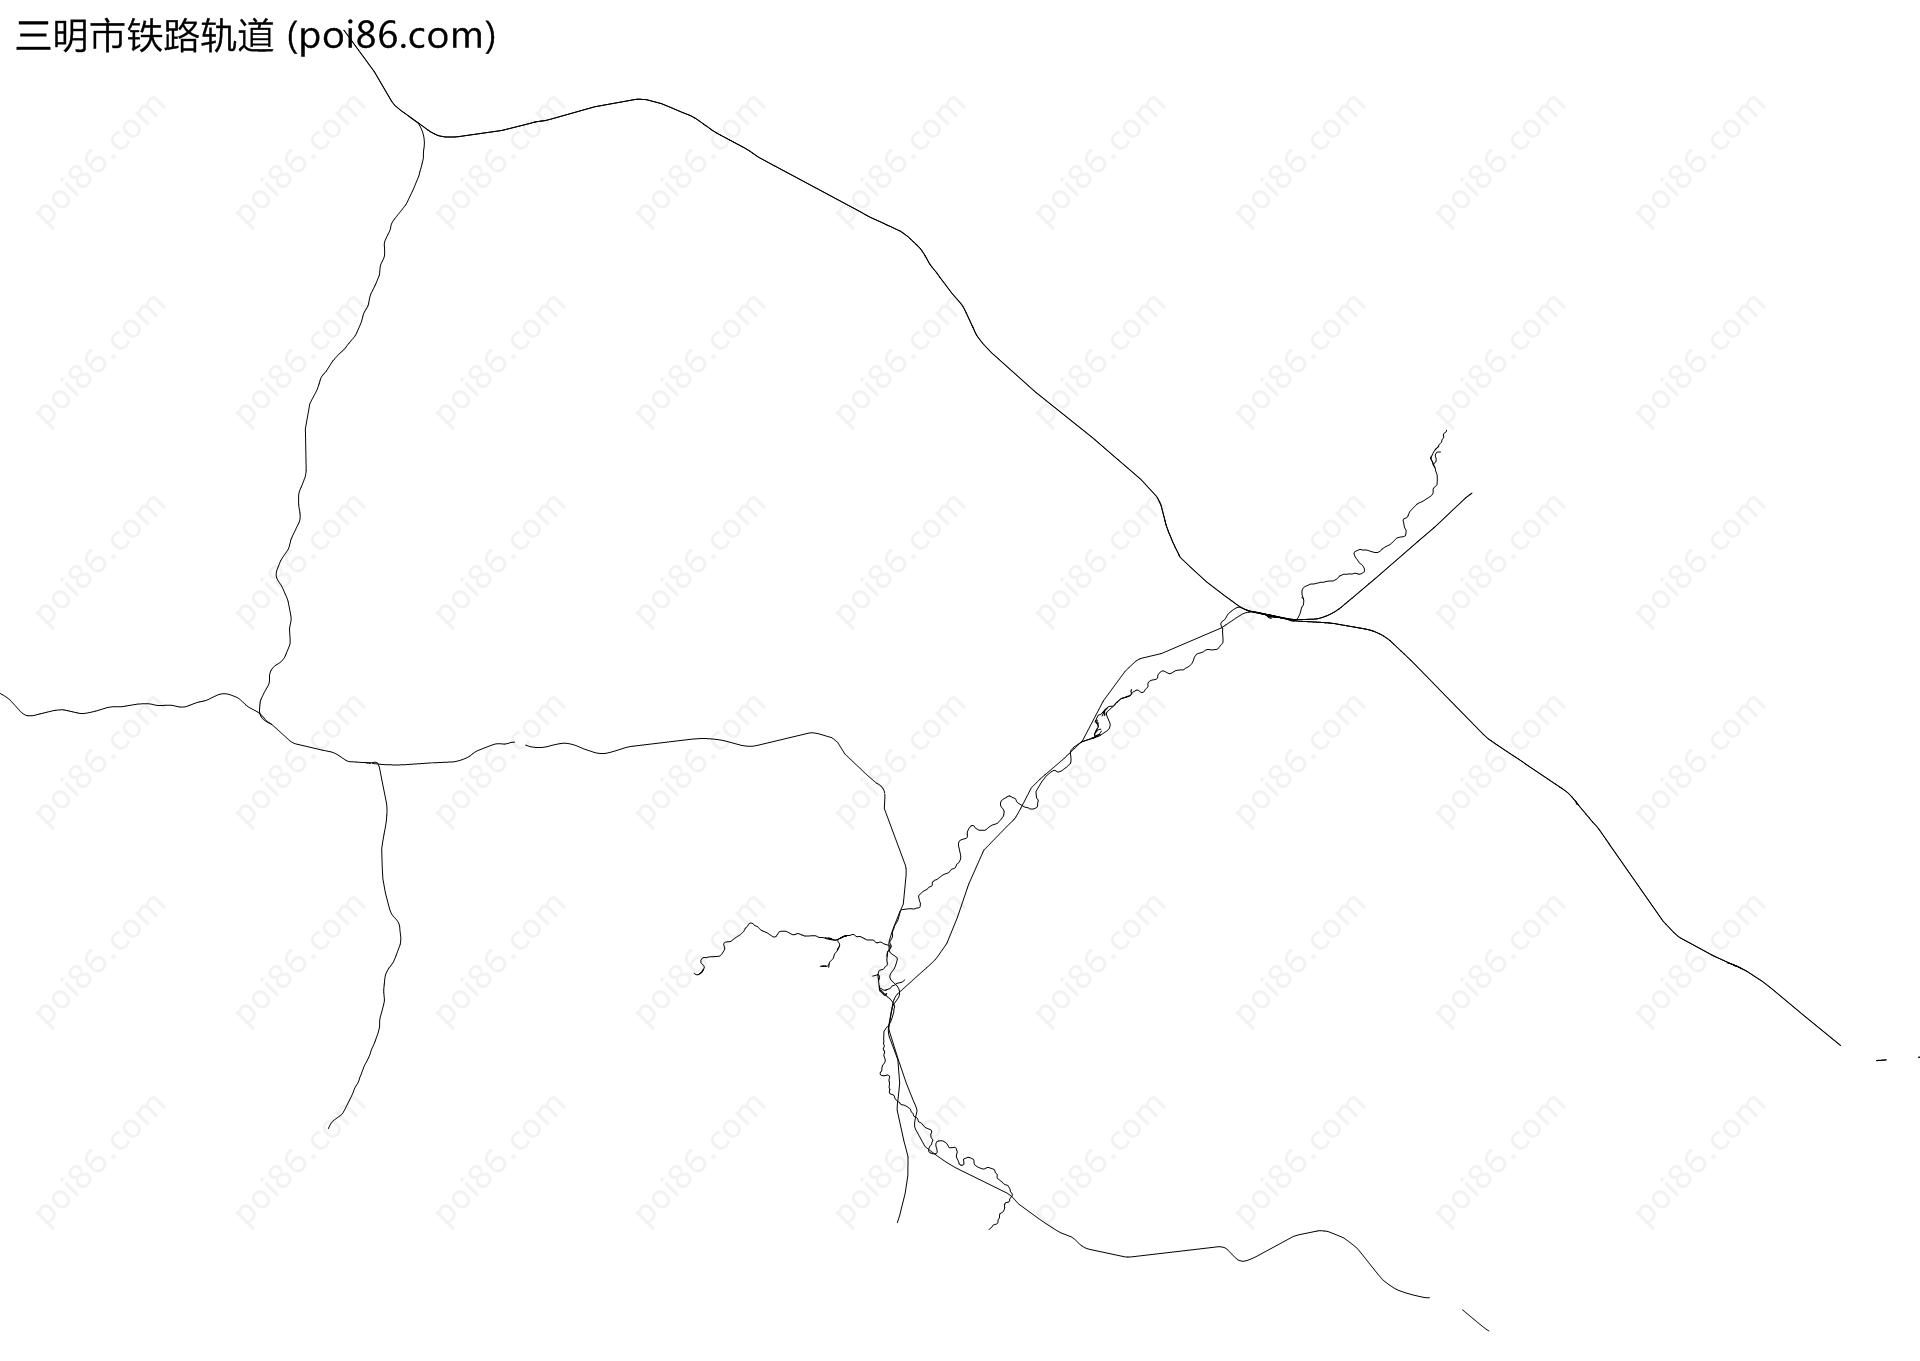 三明市铁路轨道地图